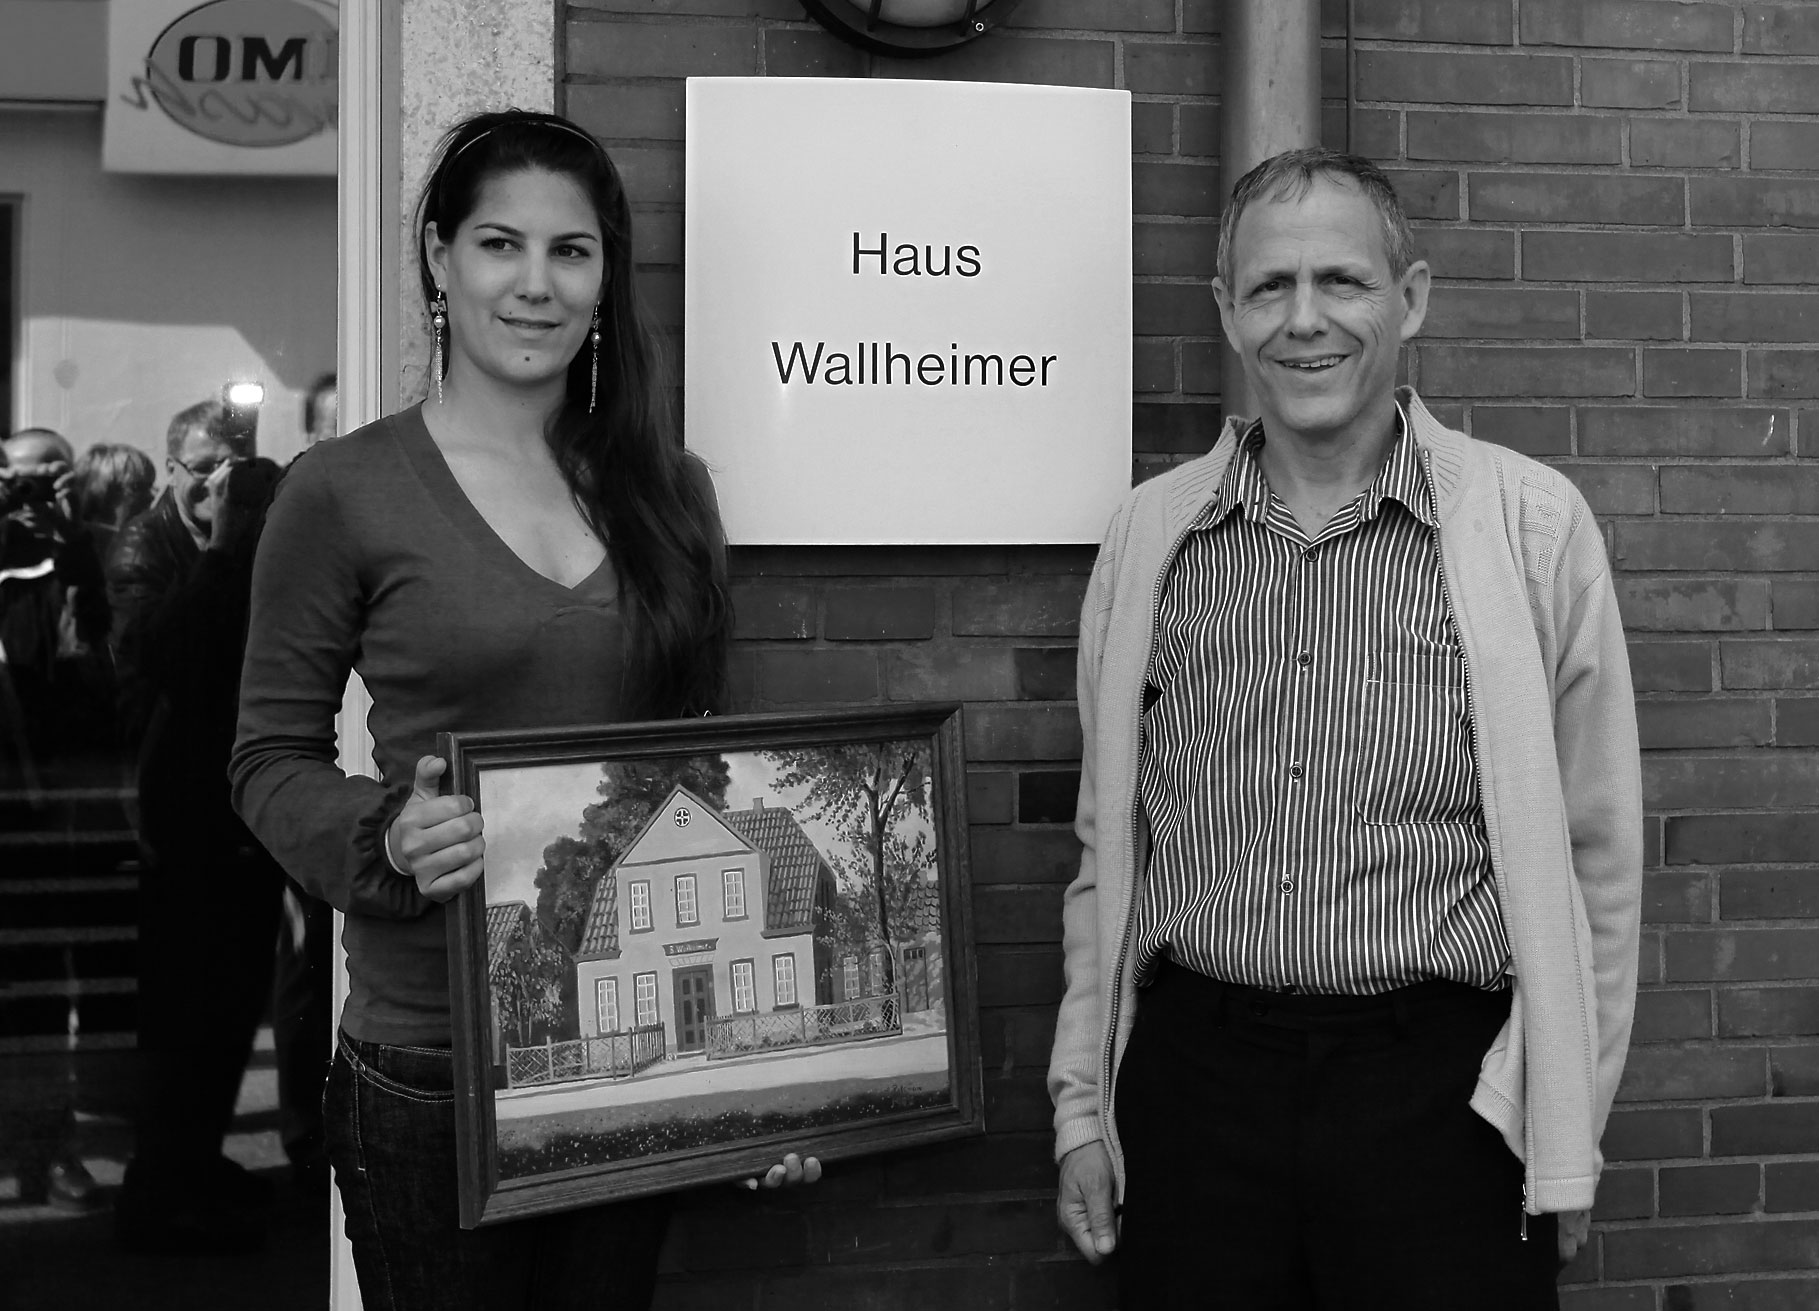 Berni Wallheimers Sohn Nir mit Tochter Adina in Aurich vor dem Haus am Breiten Weg 1. Adina hält ein Bild vom Haus.